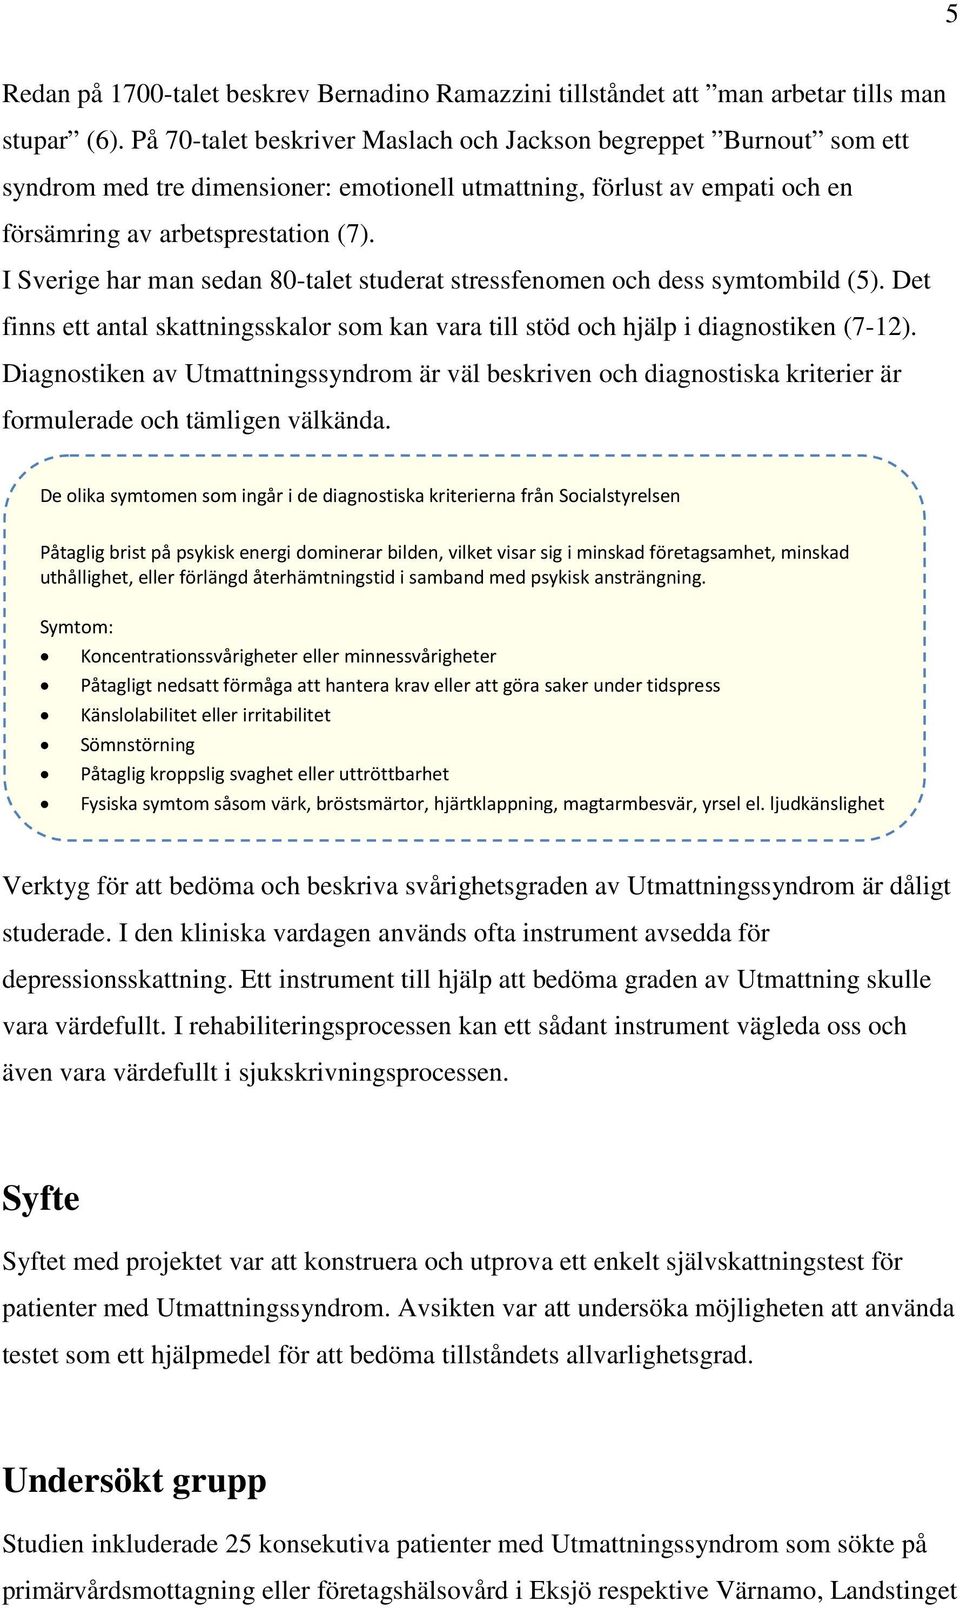 I Sverige har man sedan 80-talet studerat stressfenomen och dess symtombild (5). Det finns ett antal skattningsskalor som kan vara till stöd och hjälp i diagnostiken (7-12).